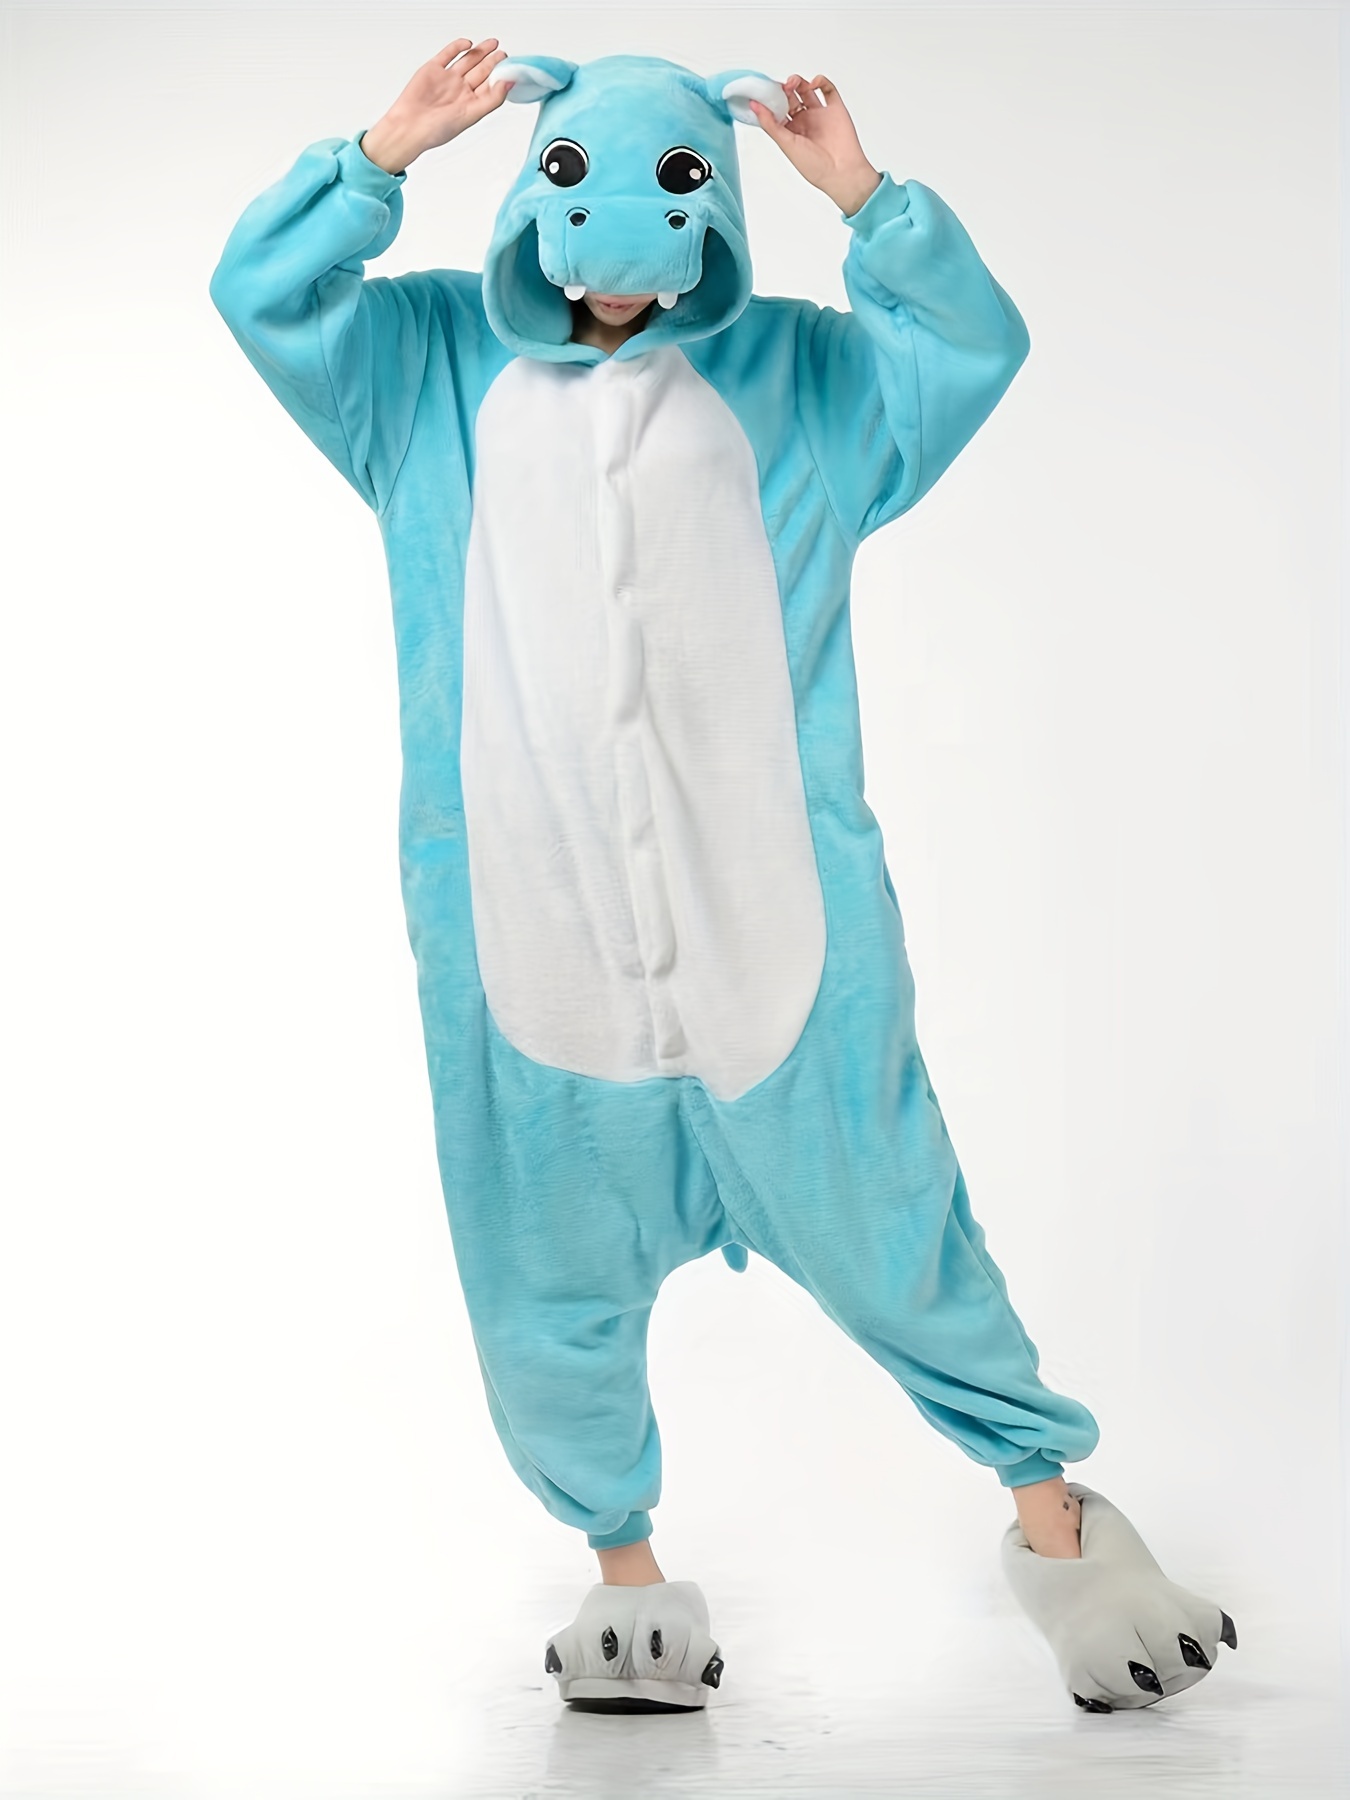 Mono Estilo Animal Bebé Súper Lindo Disfraz Halloween Pijama